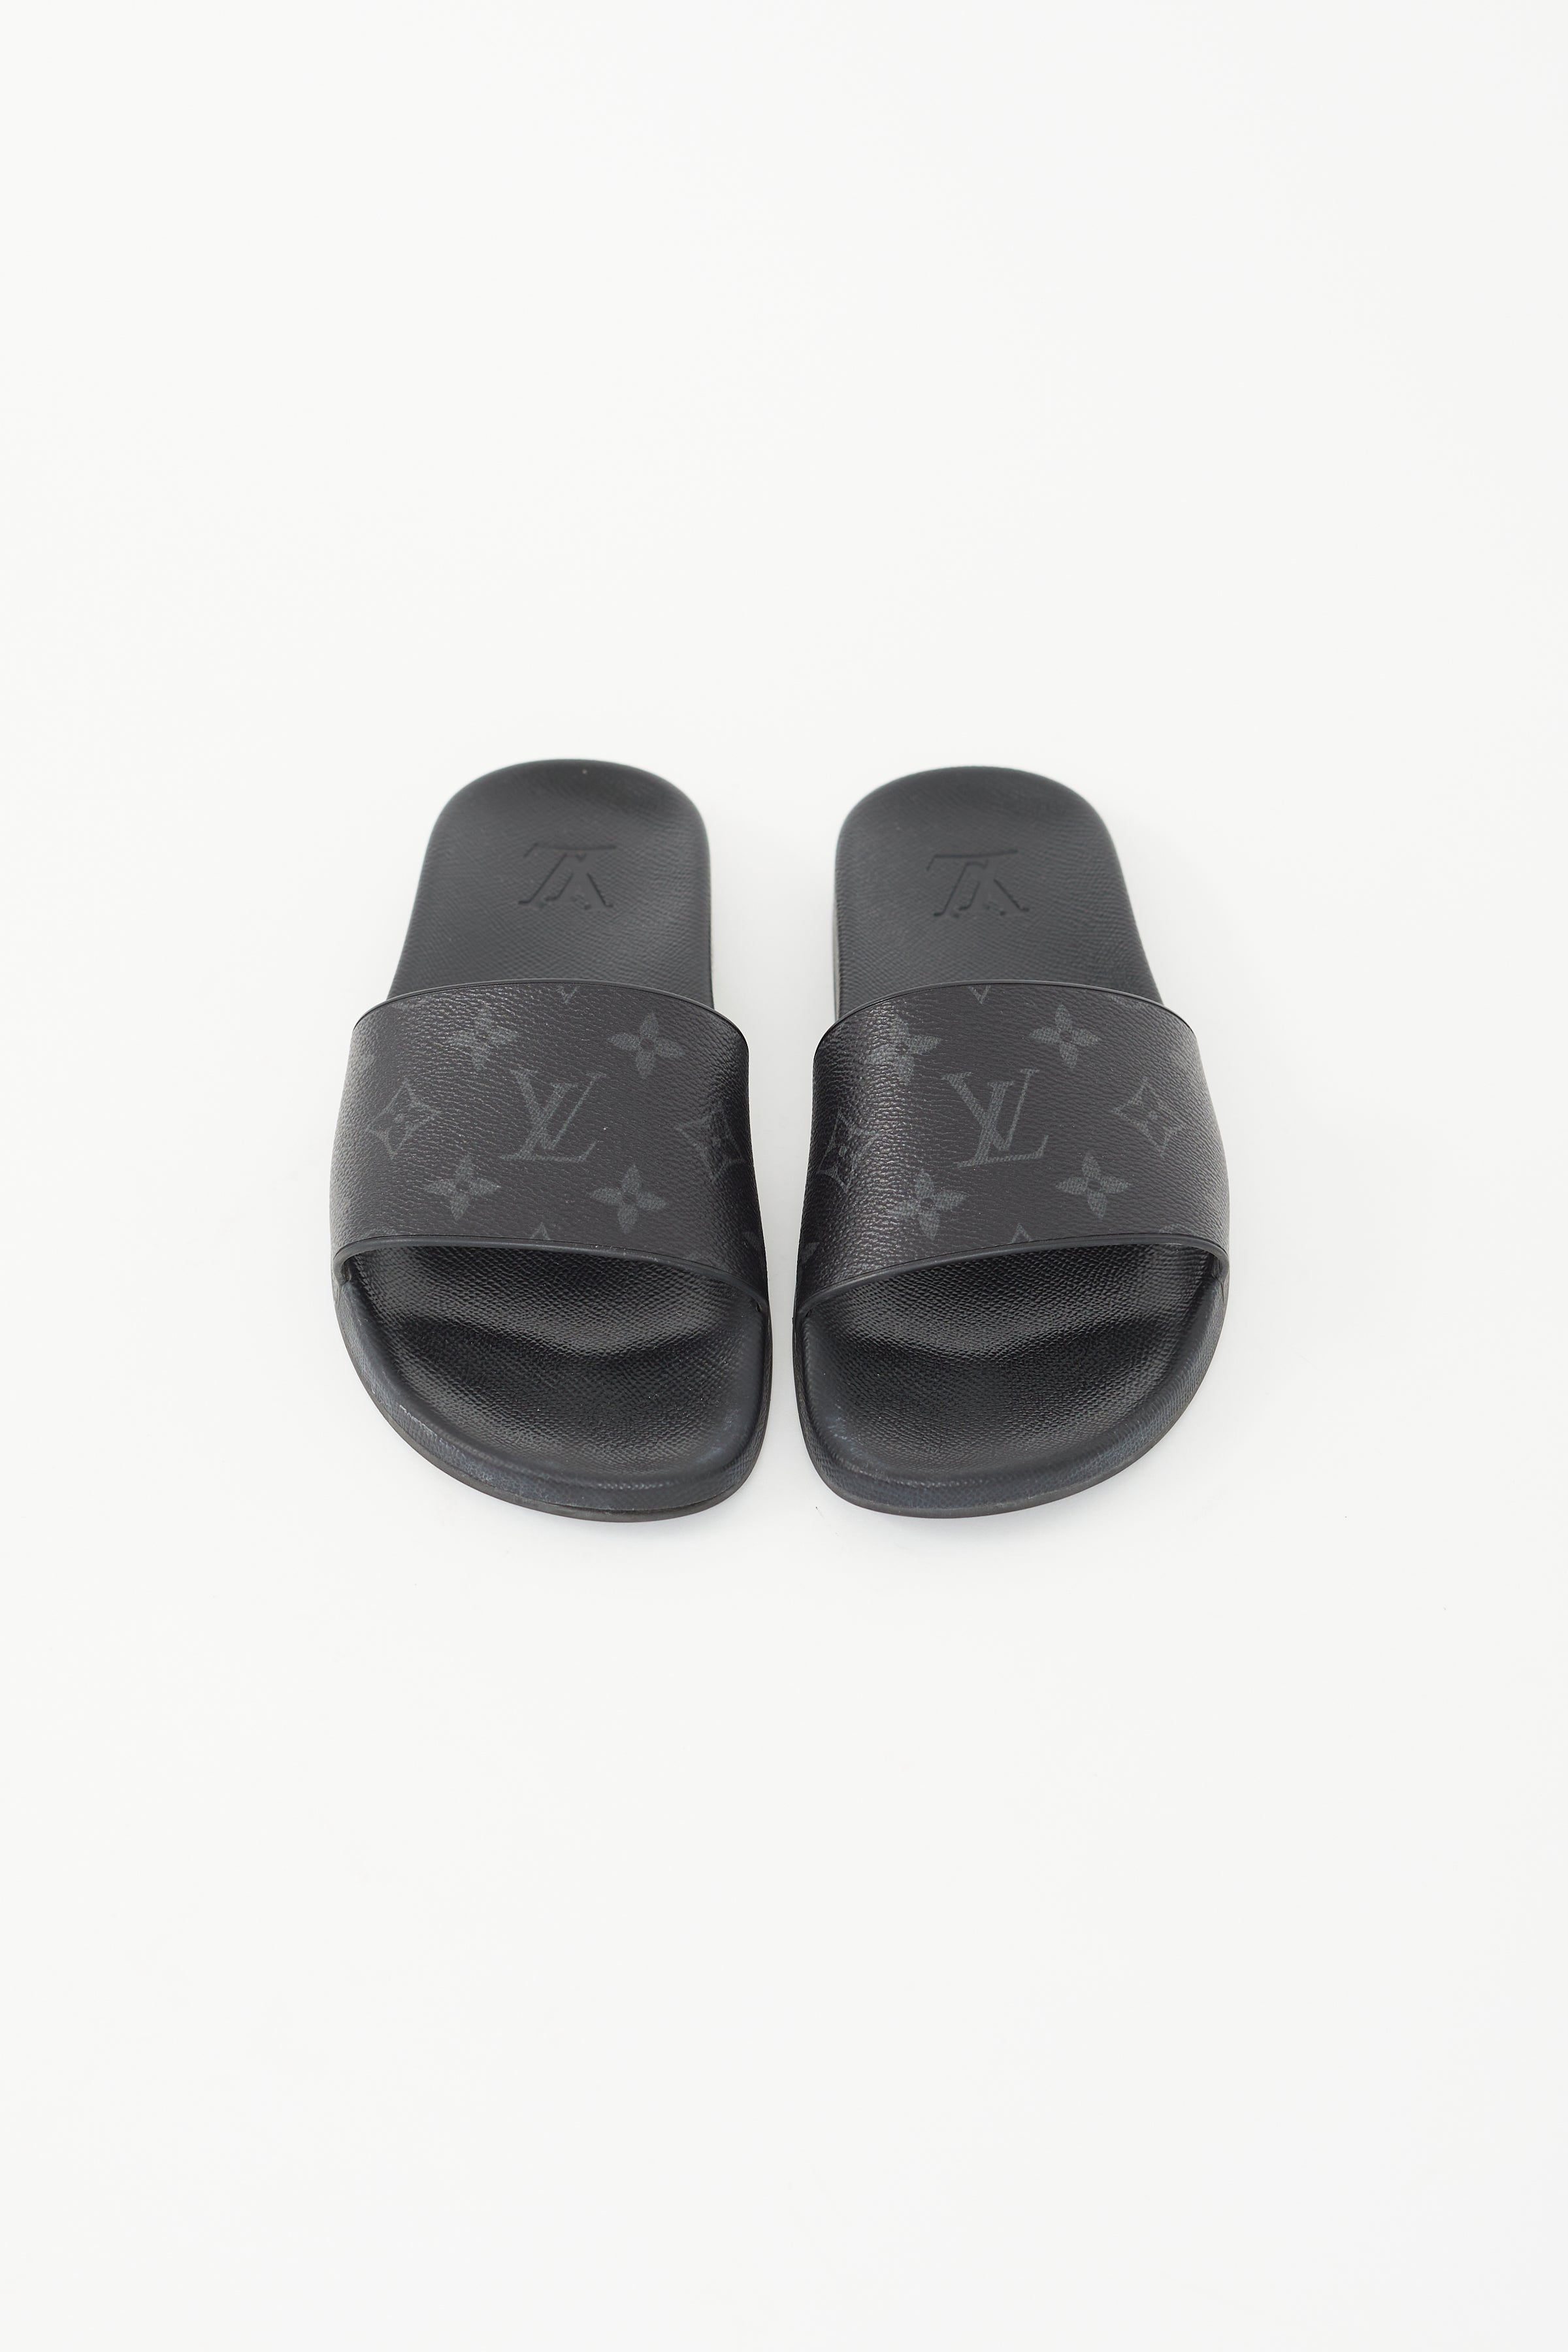 Louis Vuitton, Shoes, Mens Louis Vuitton Waterfront Mule Slides